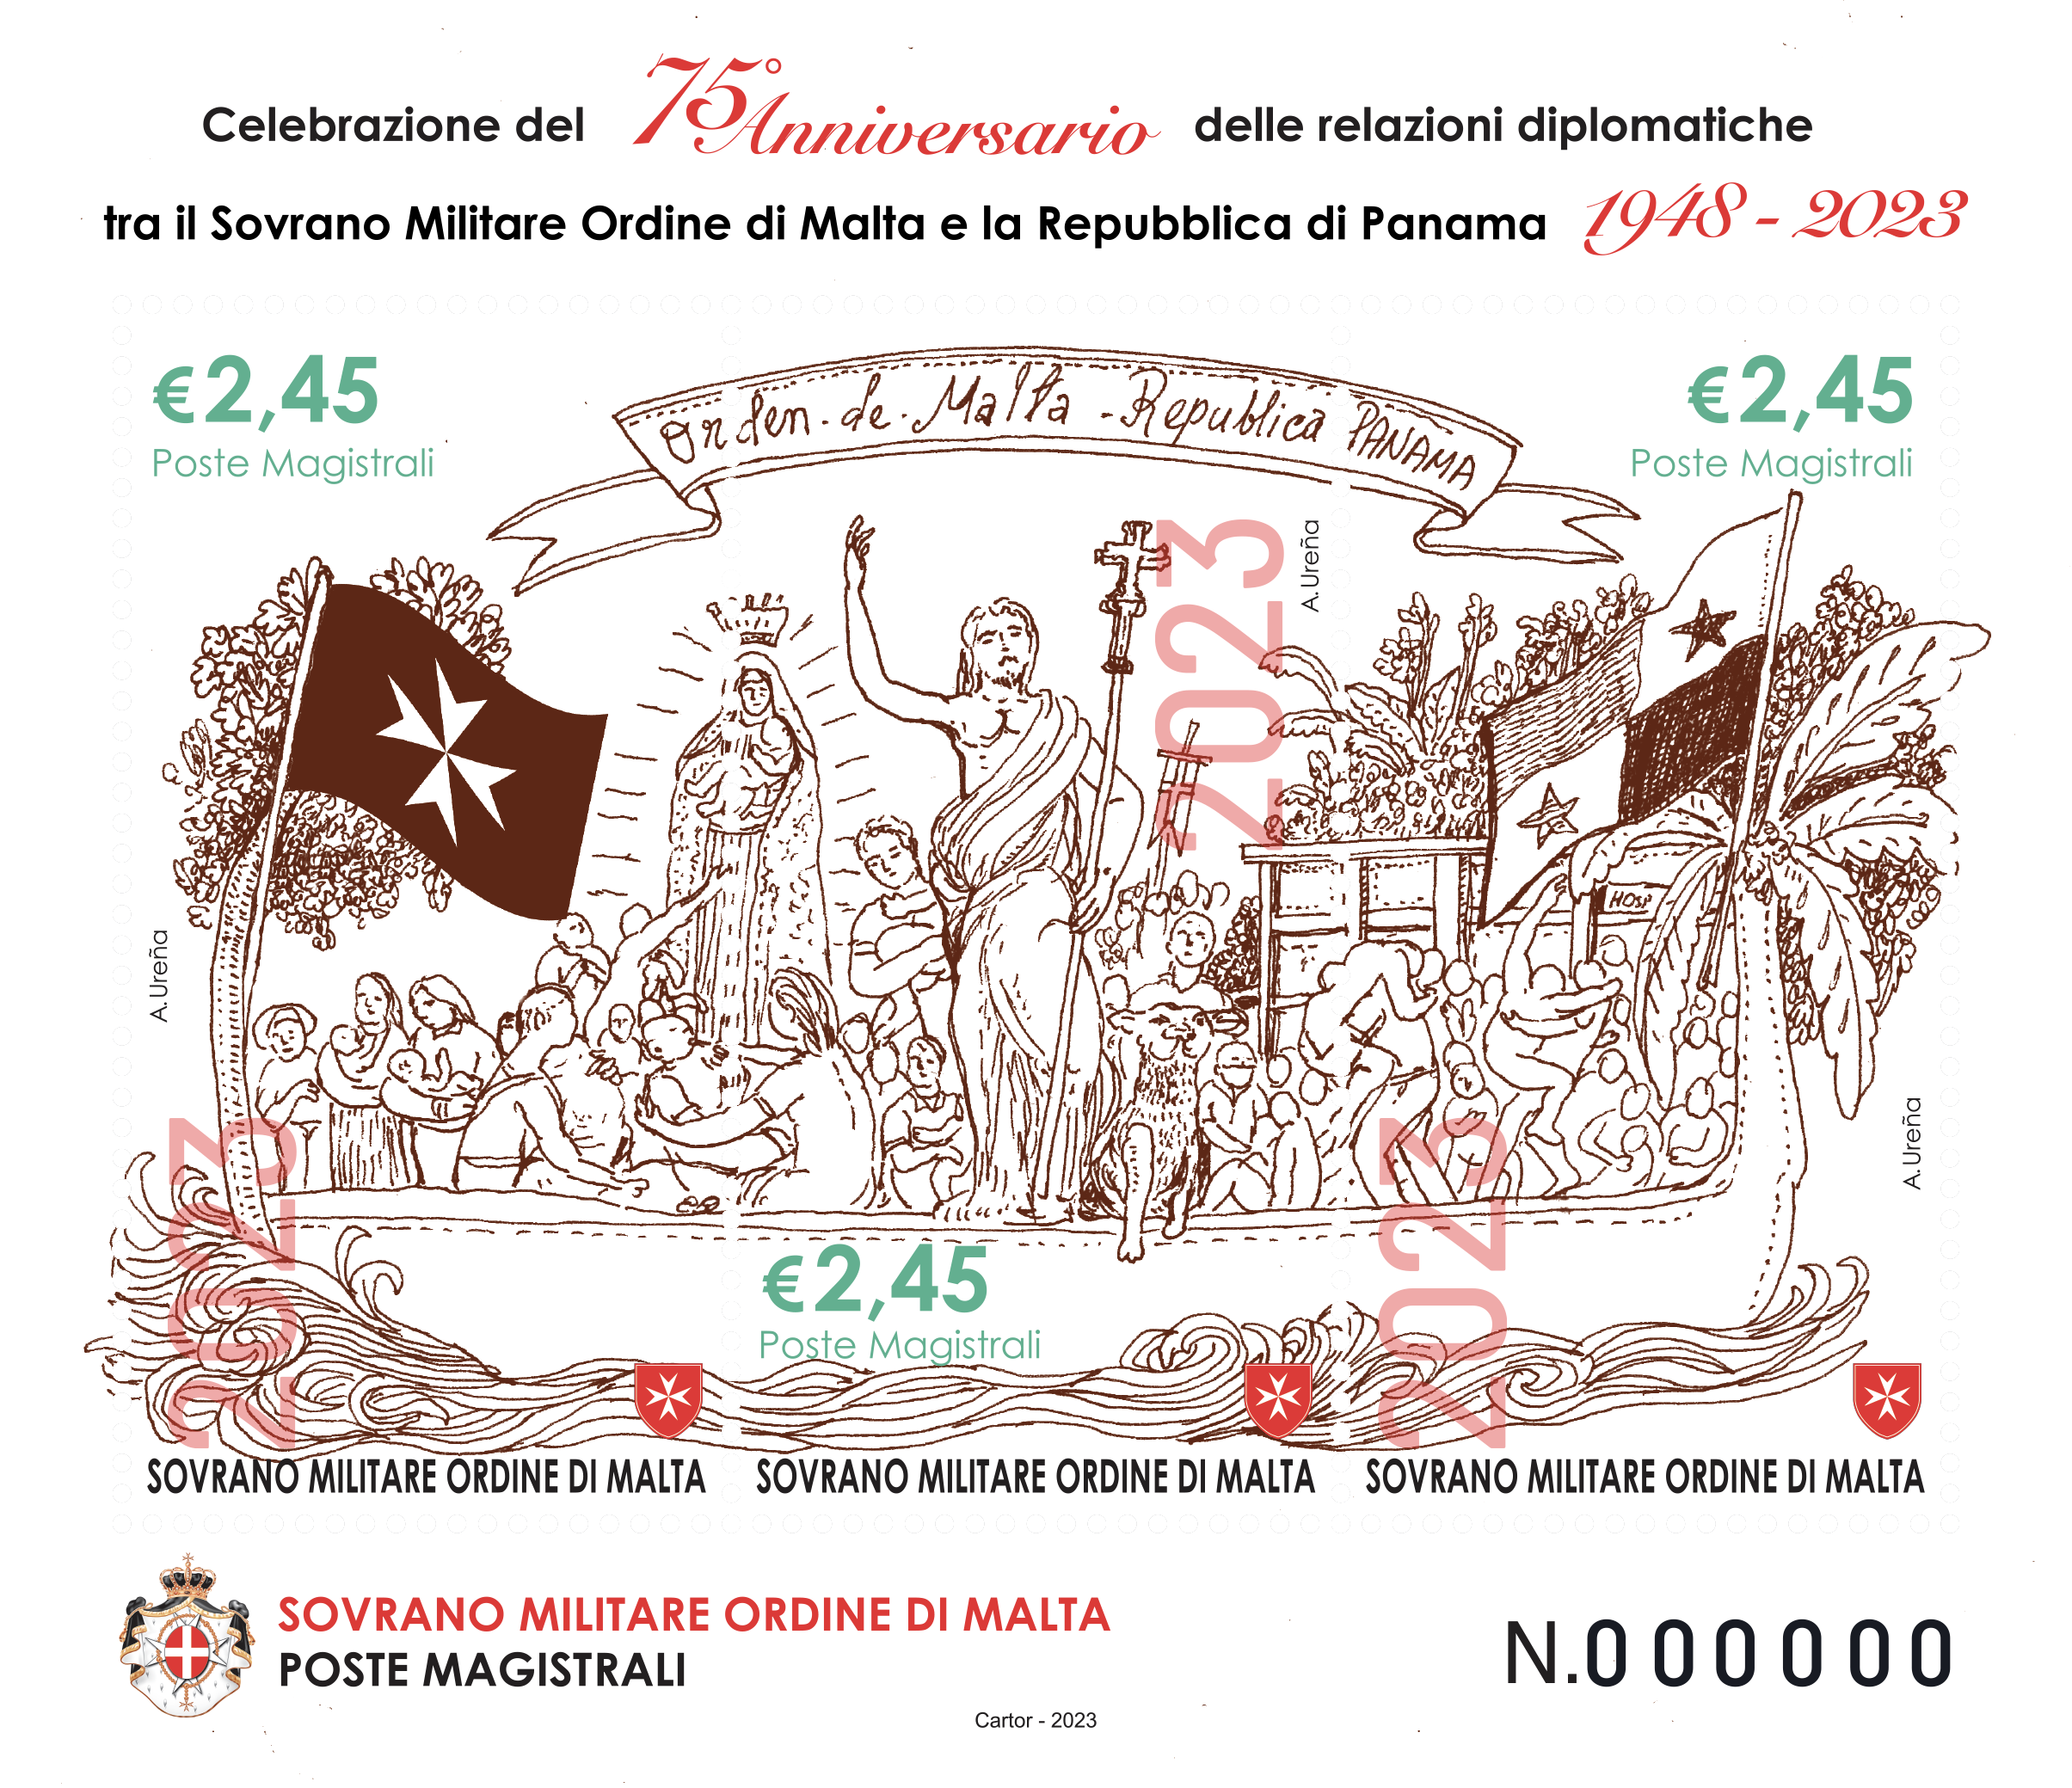 Presentata l’emissione postale dedicata al 75° anniversario delle relazioni diplomatiche tra l’Ordine di Malta e Panama